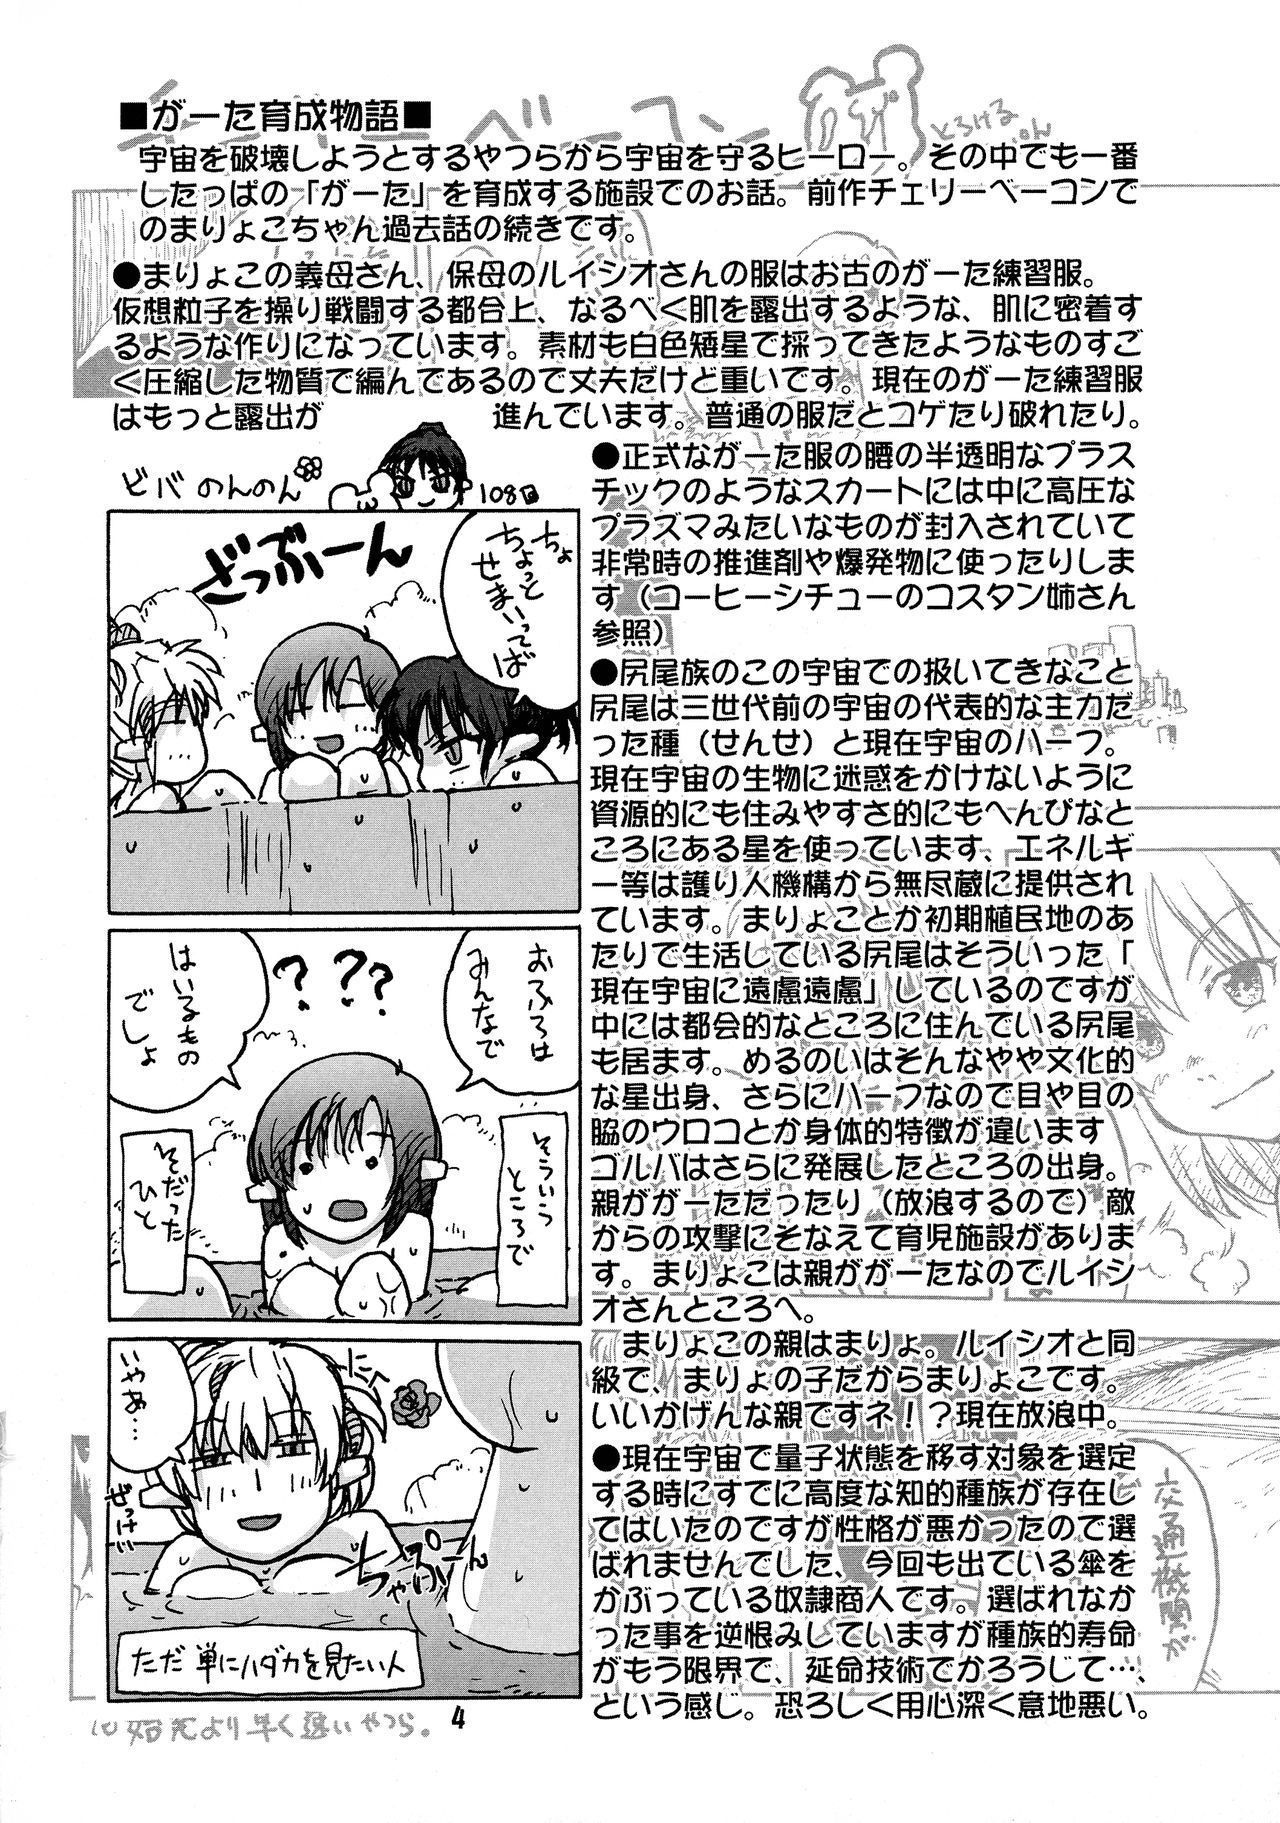 [Kyodai Kidou Yousai Kyoushuu (Kamio 96)] Manga Mintochikuwa vol. 3 3